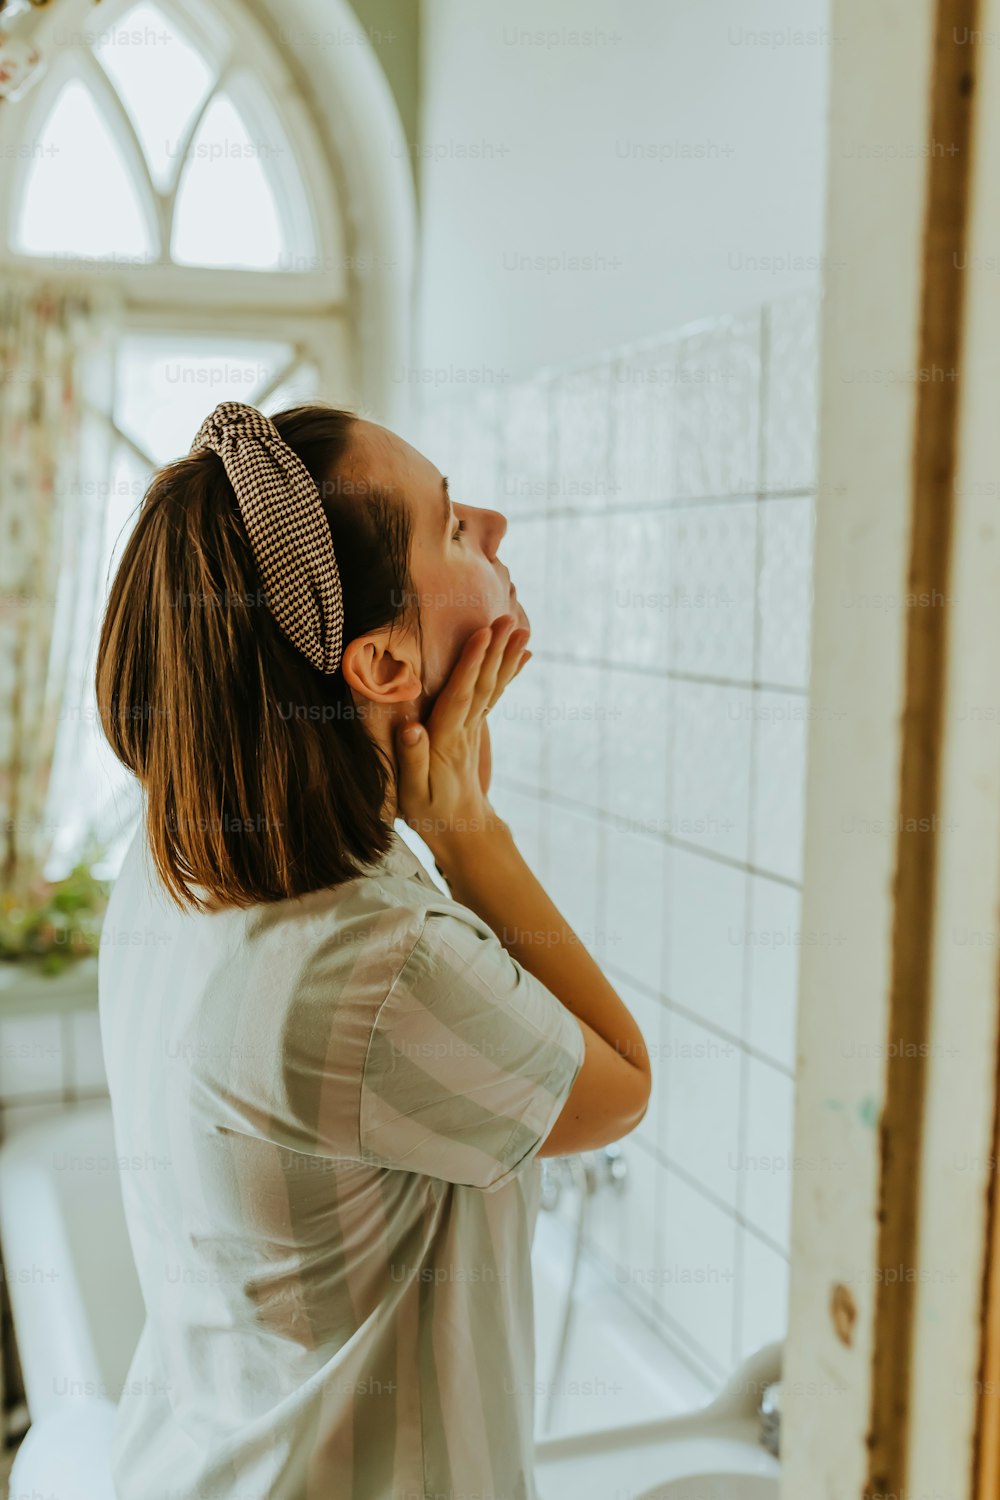 Une femme debout devant un miroir de salle de bain